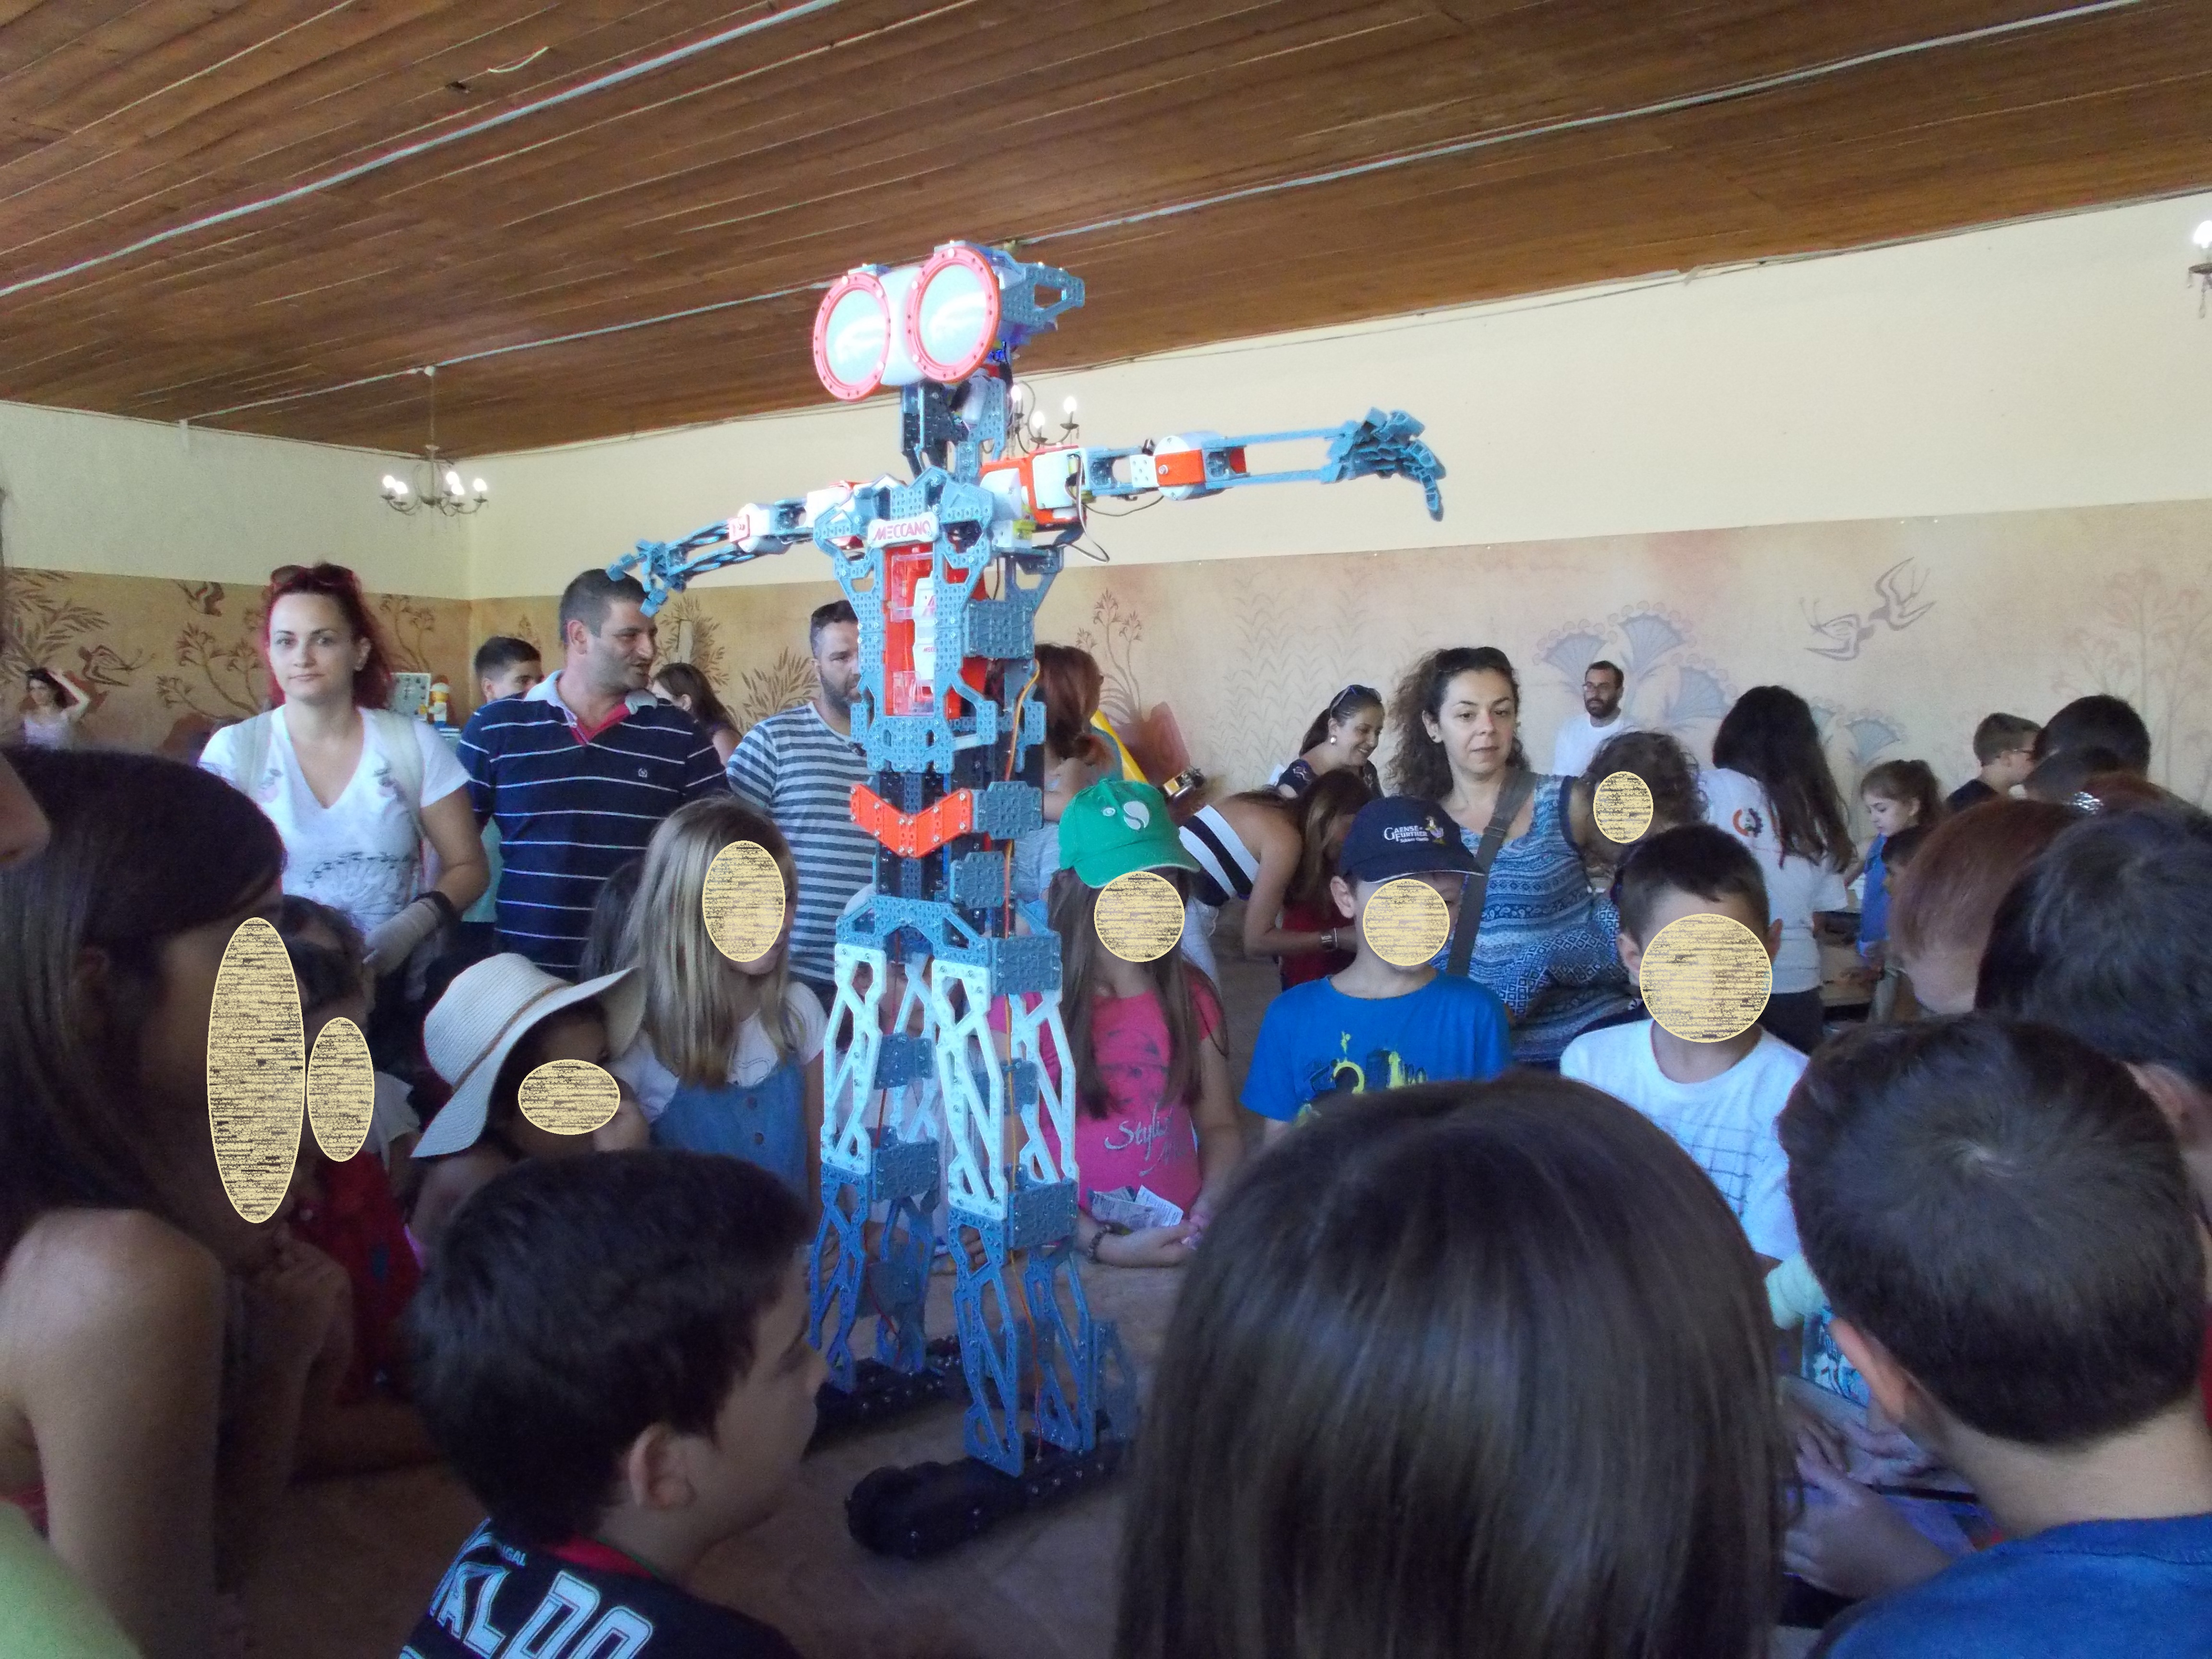  Επιτυχημένο το 1ο Φεστιβάλ Εκπαιδευτικής Ρομποτικής και S.T.E M. Κρήτης